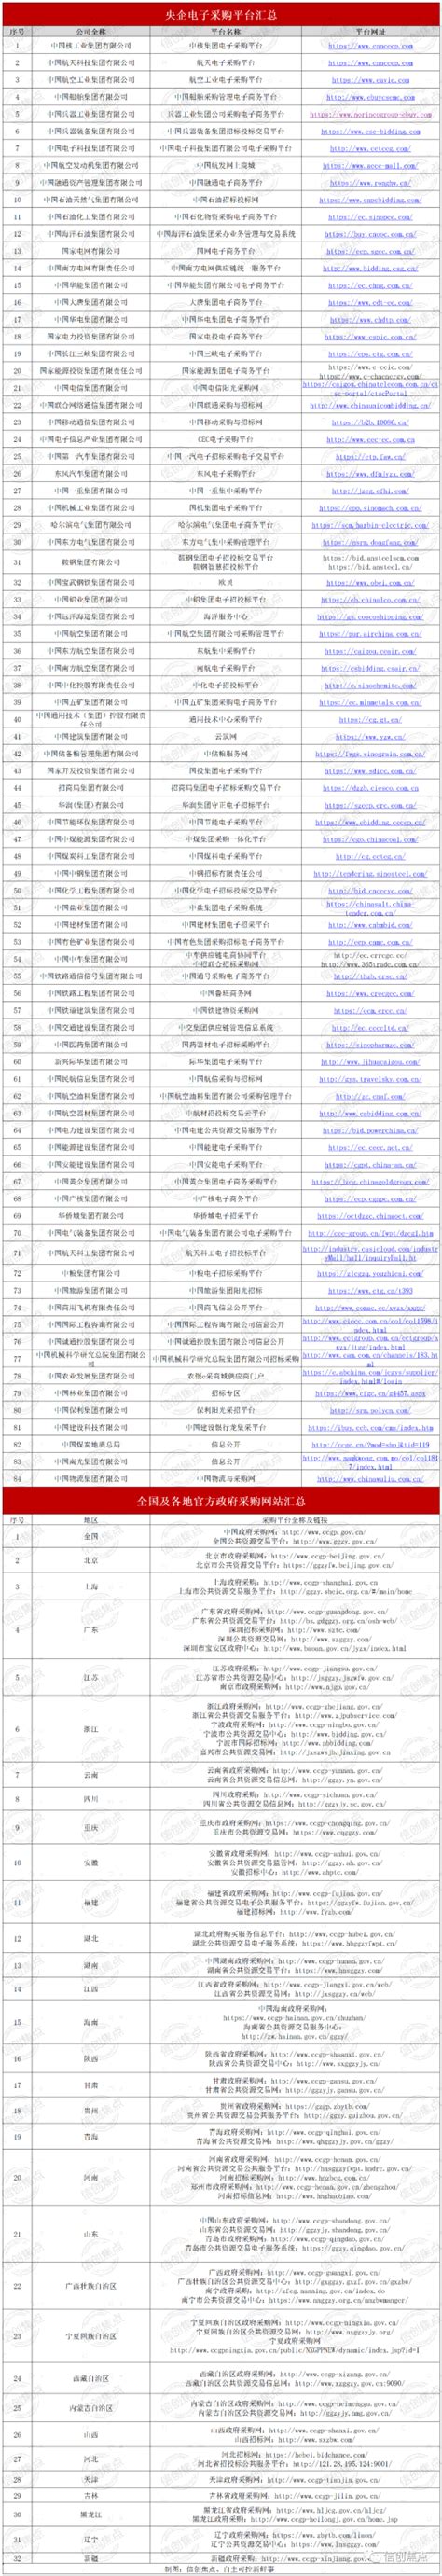 关于南京市政府采购绿色建材第一批产品信息登记情况的通告_南京市建筑门窗幕墙行业协会